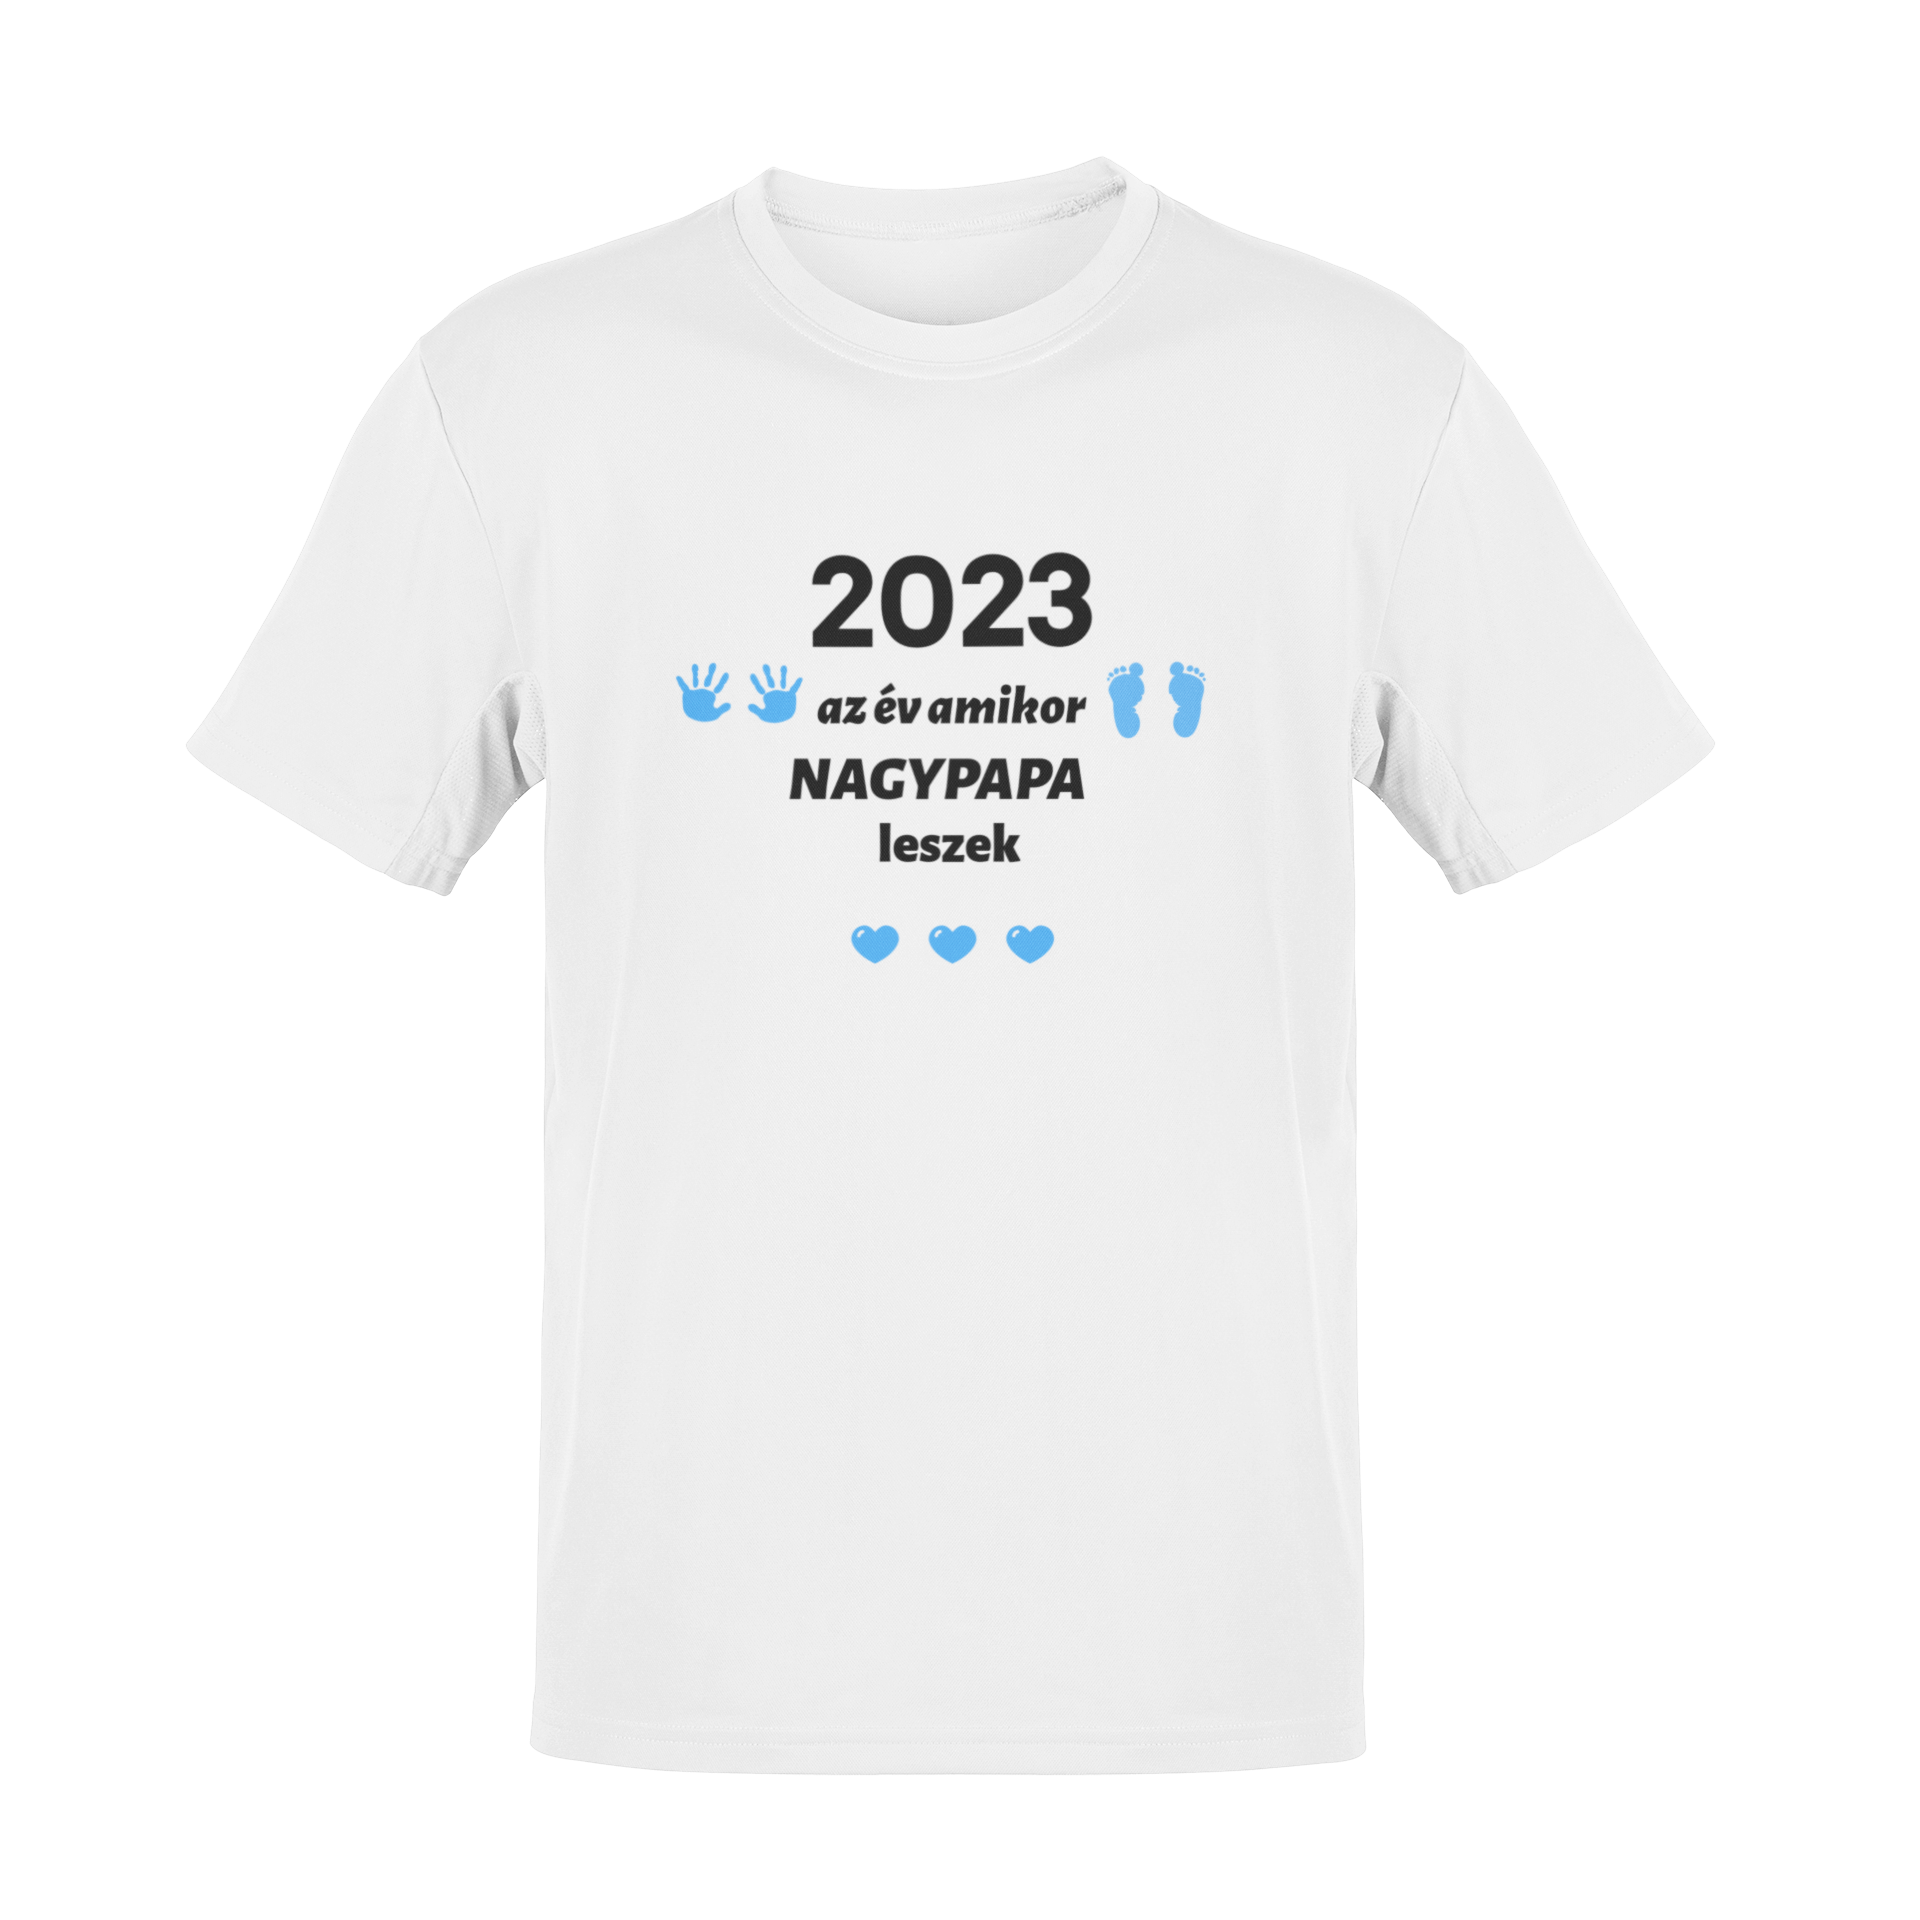 2023 az év amikor NAGYPAPA leszek póló (kék minta)